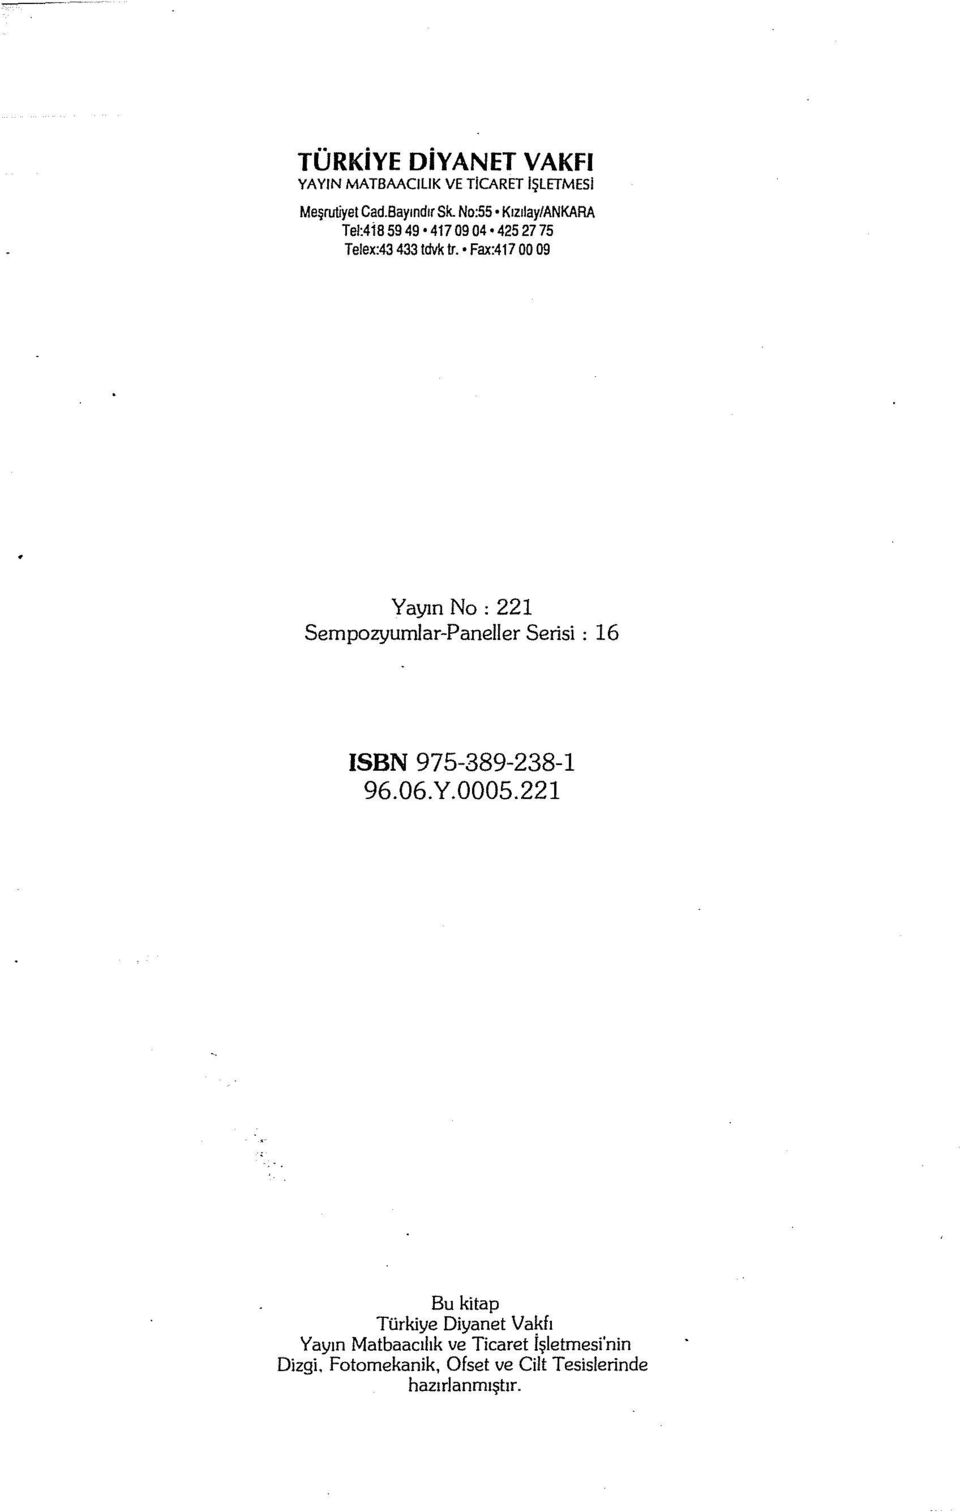 Fax:417 00 09 Yayın No: 221 Sempozyumlar-Paneller Serisi: 16 ISBN 975-389-238-1 96.06.Y.0005.